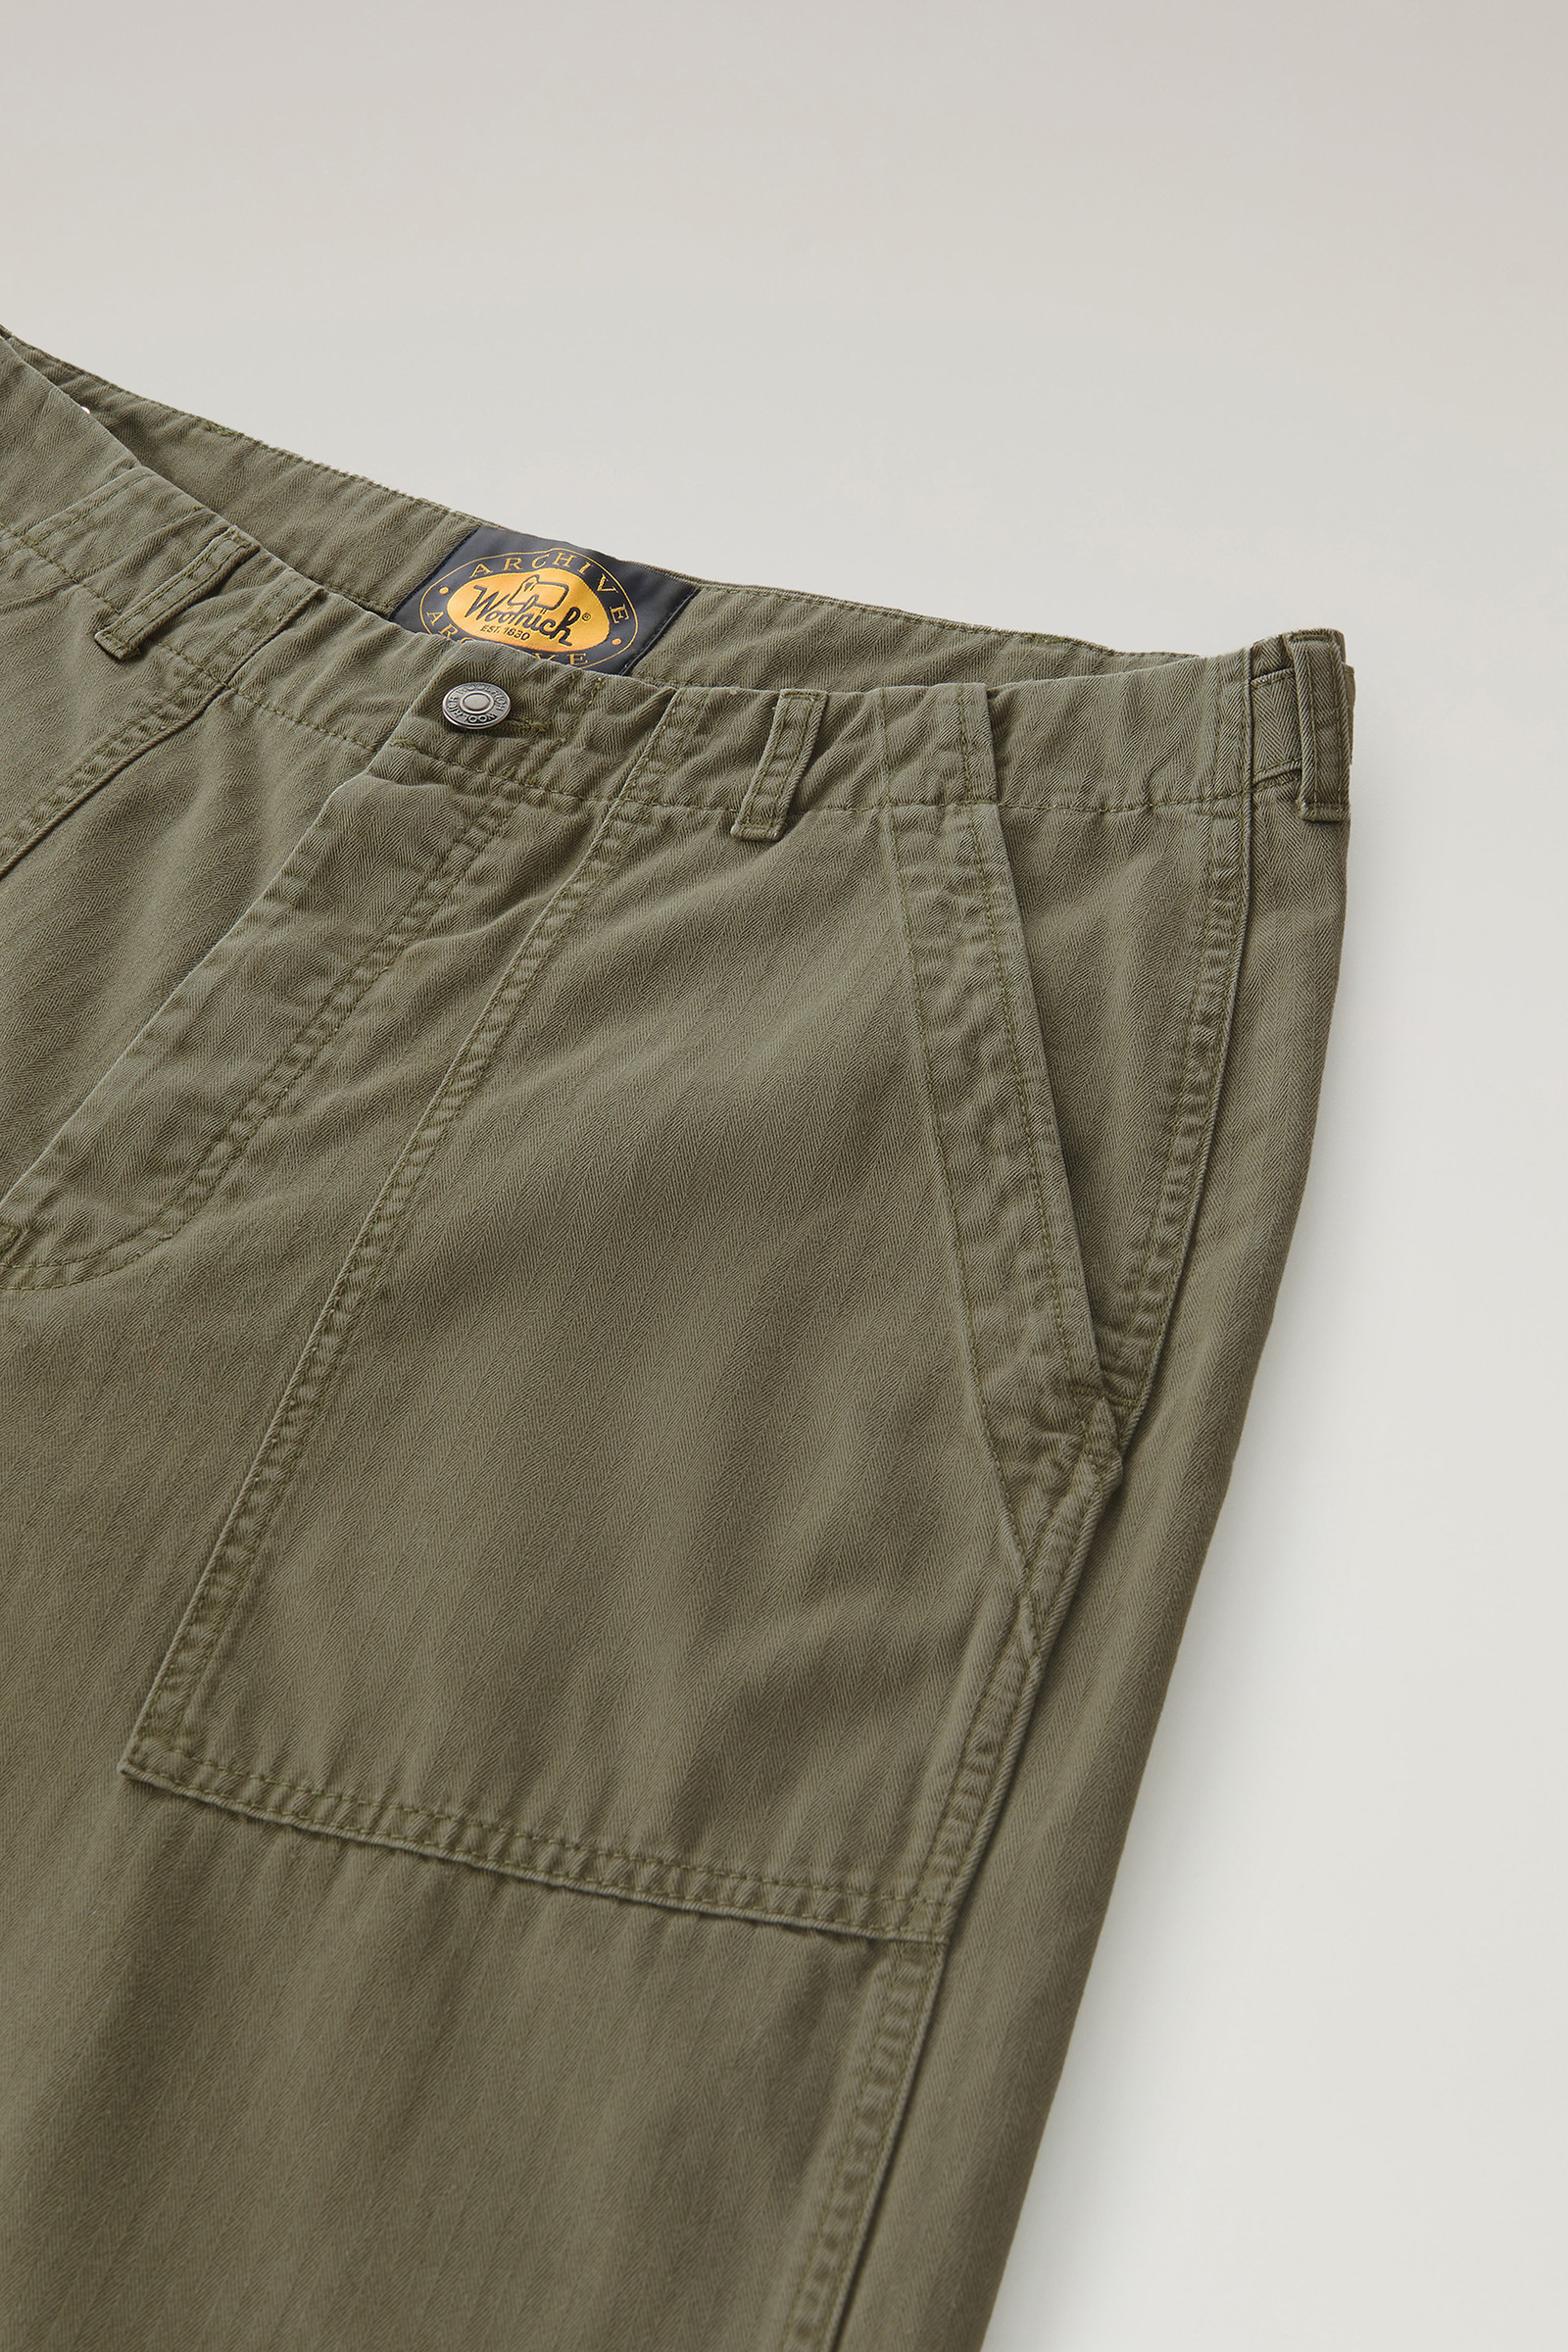 YWDJ Cargo Pants for Men Baggy Men Plus Size Pure Cotton Multi Pocket Wear  Resistant Overalls Trousers Brown L - Walmart.com